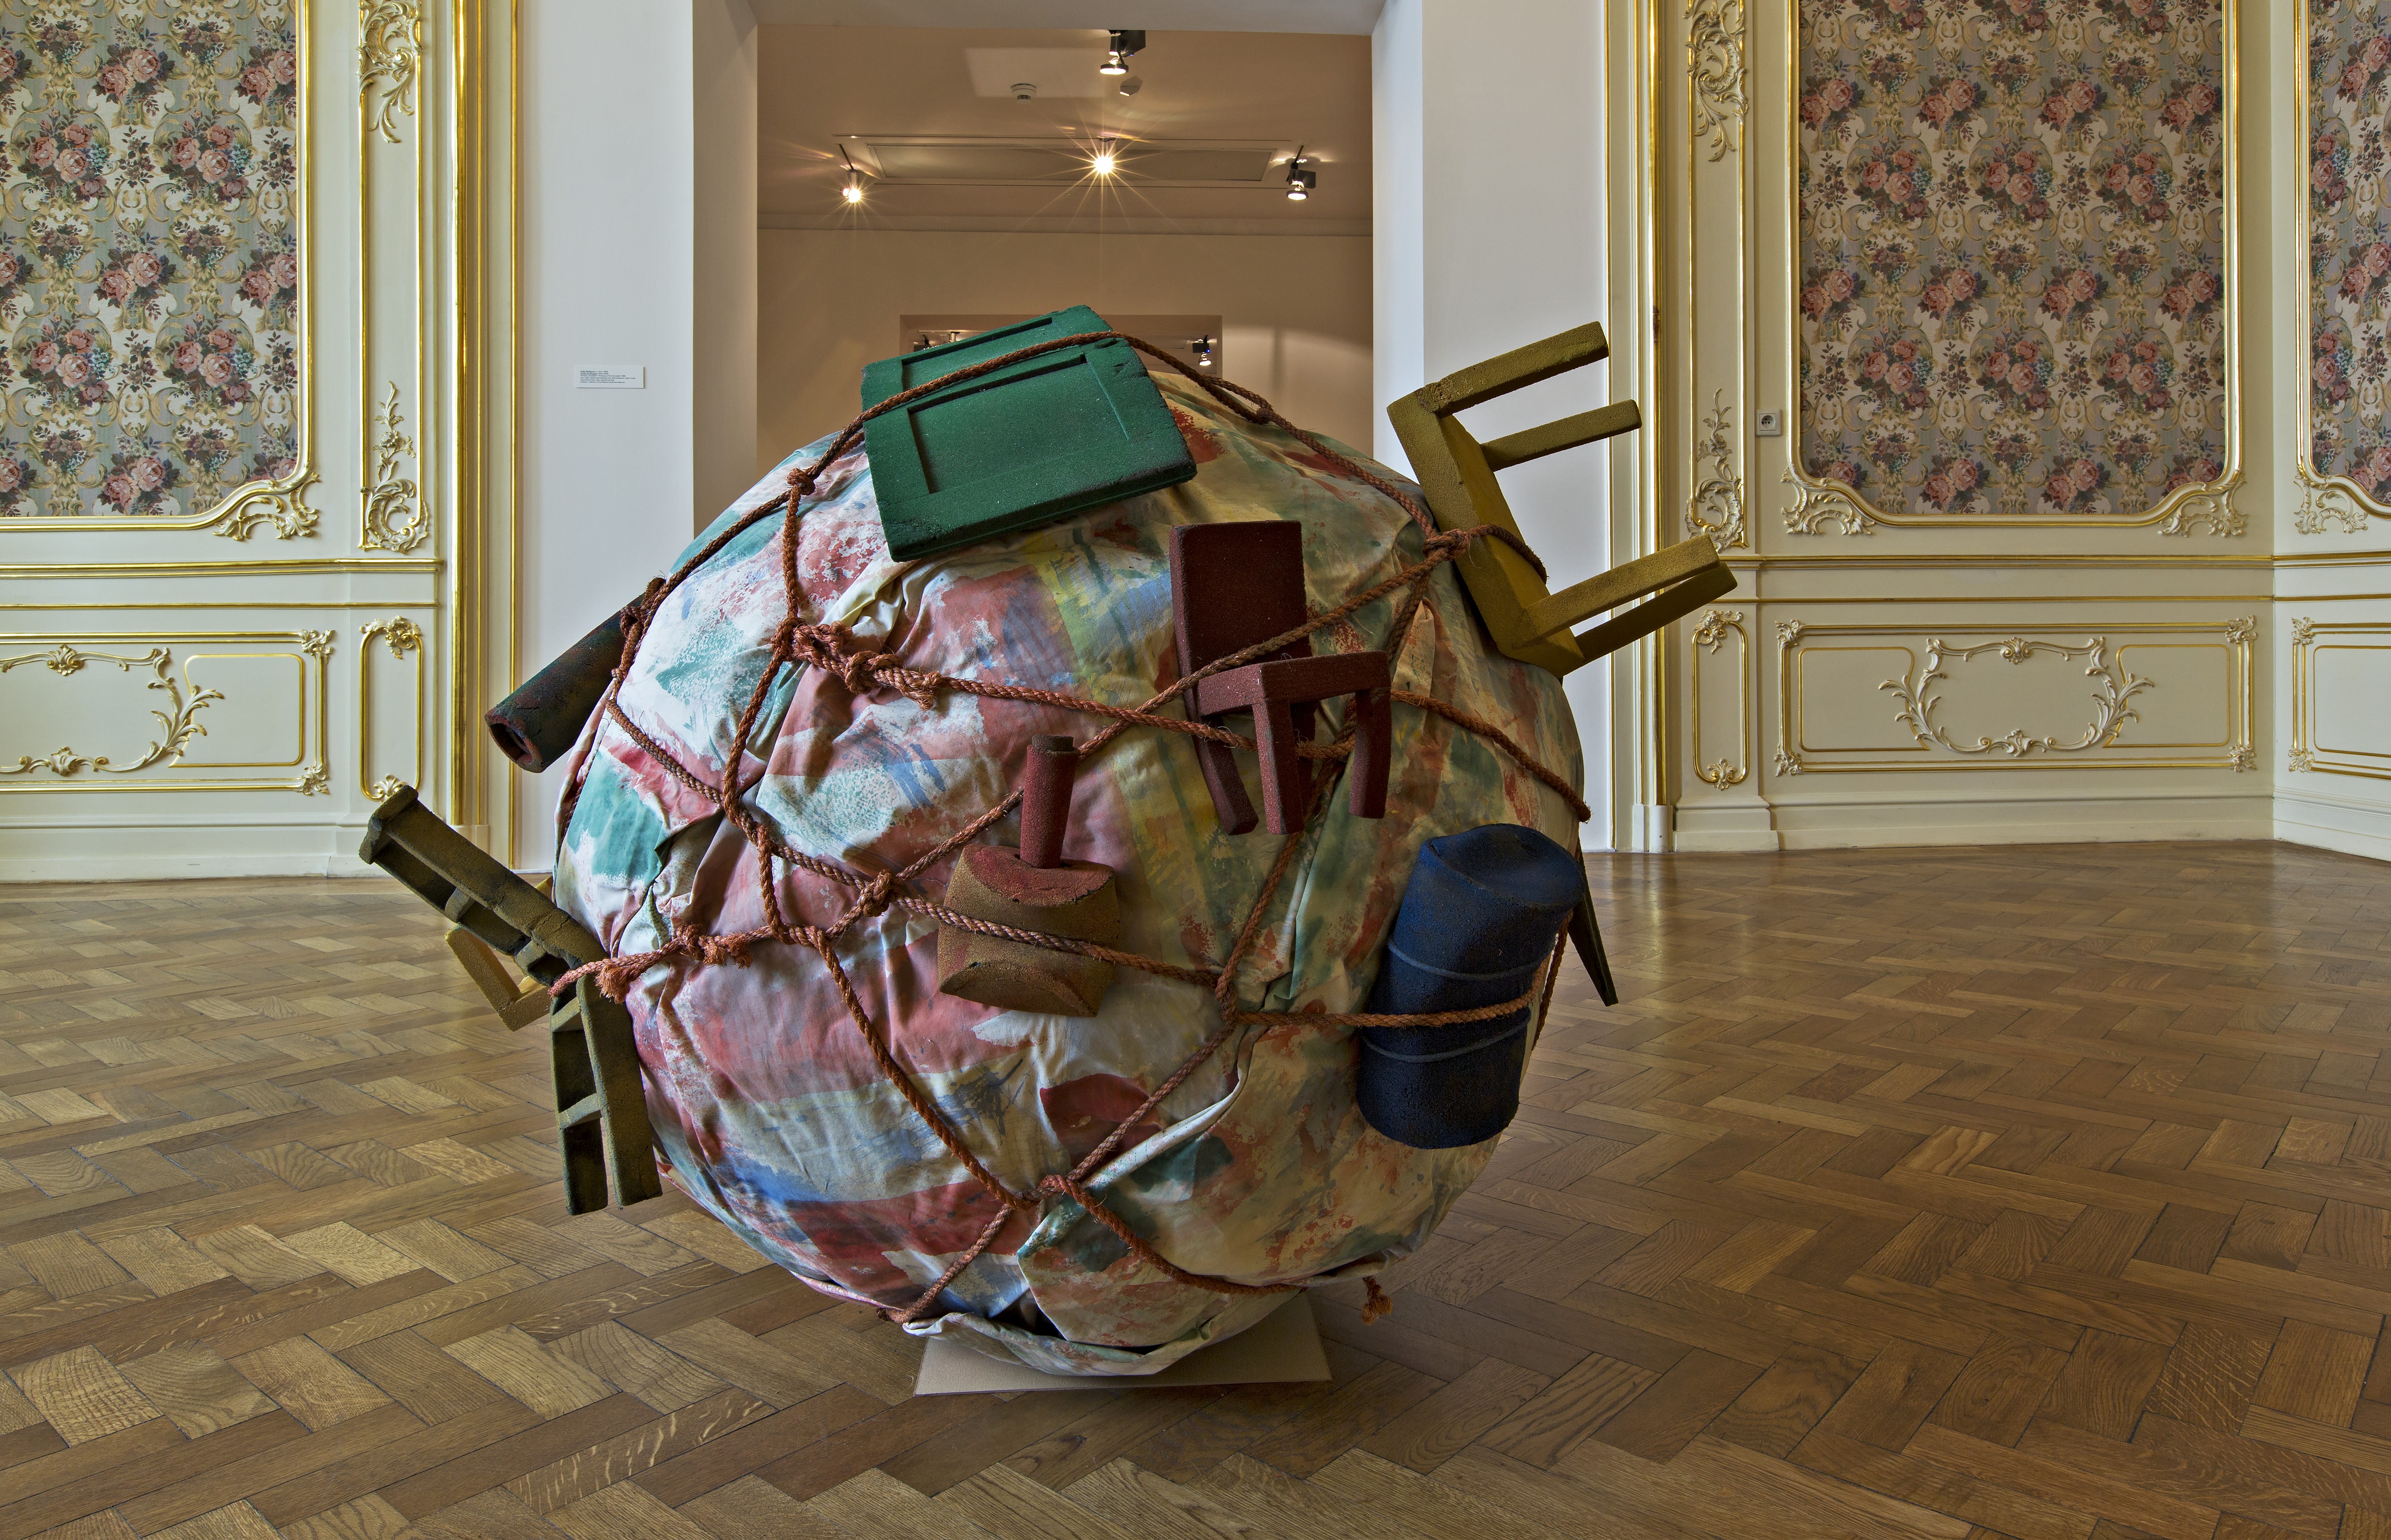 Claes Oldenburg, Coosje van Bruggen, prototyp Houseball, 1985 